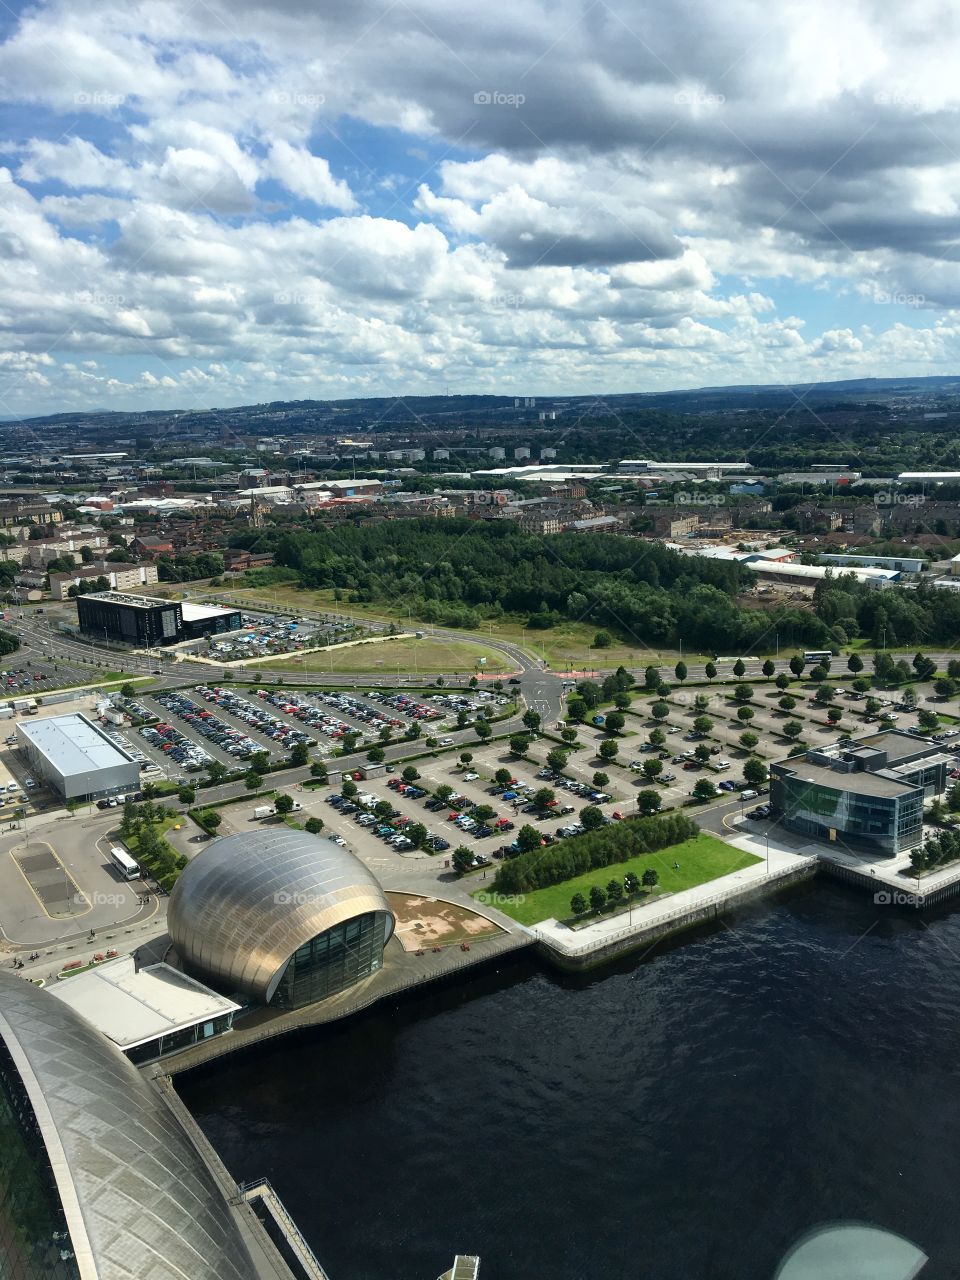 Glasgow views
